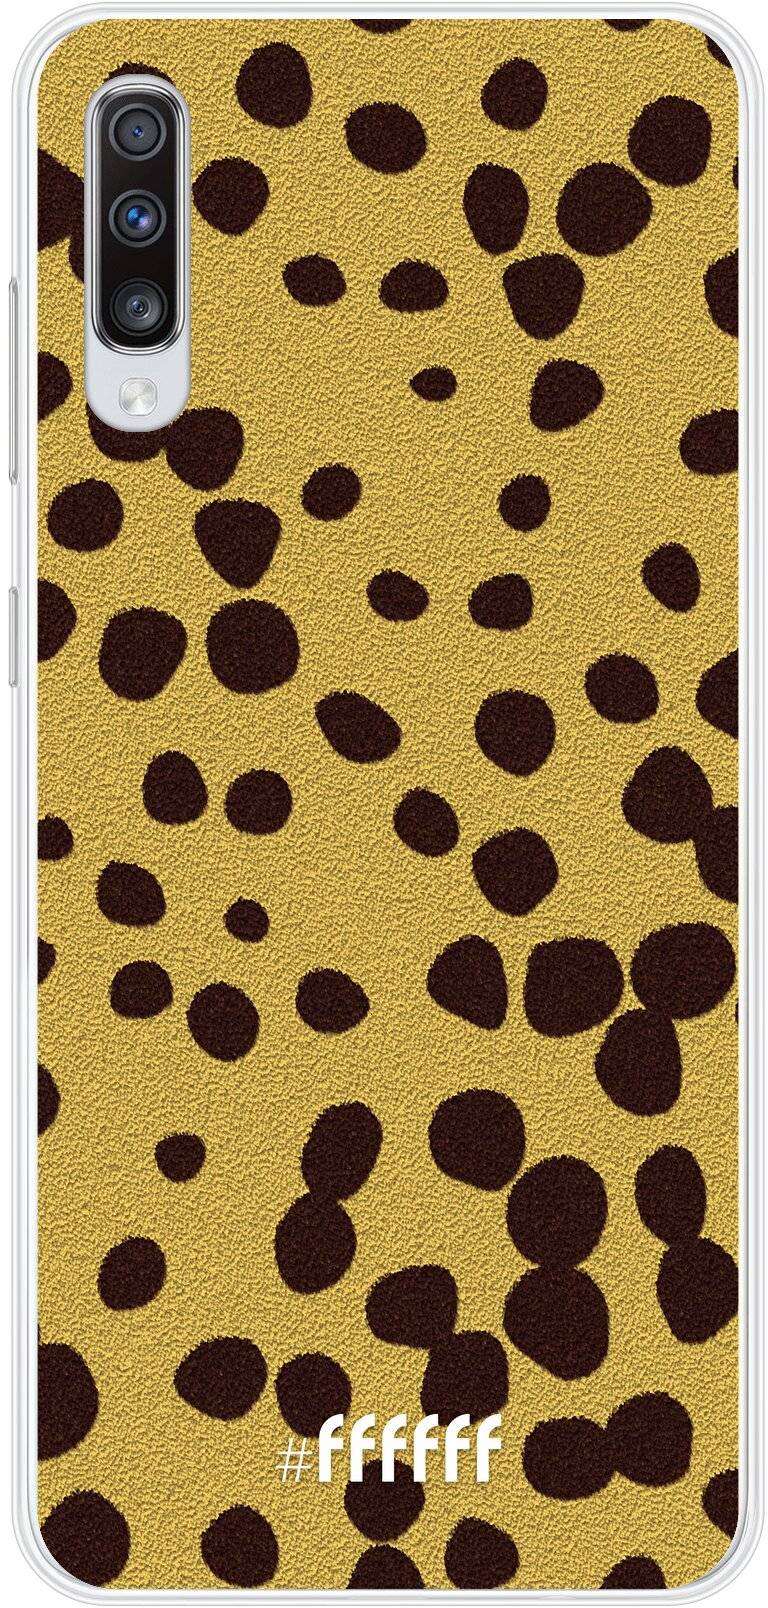 Cheetah Print Galaxy A70